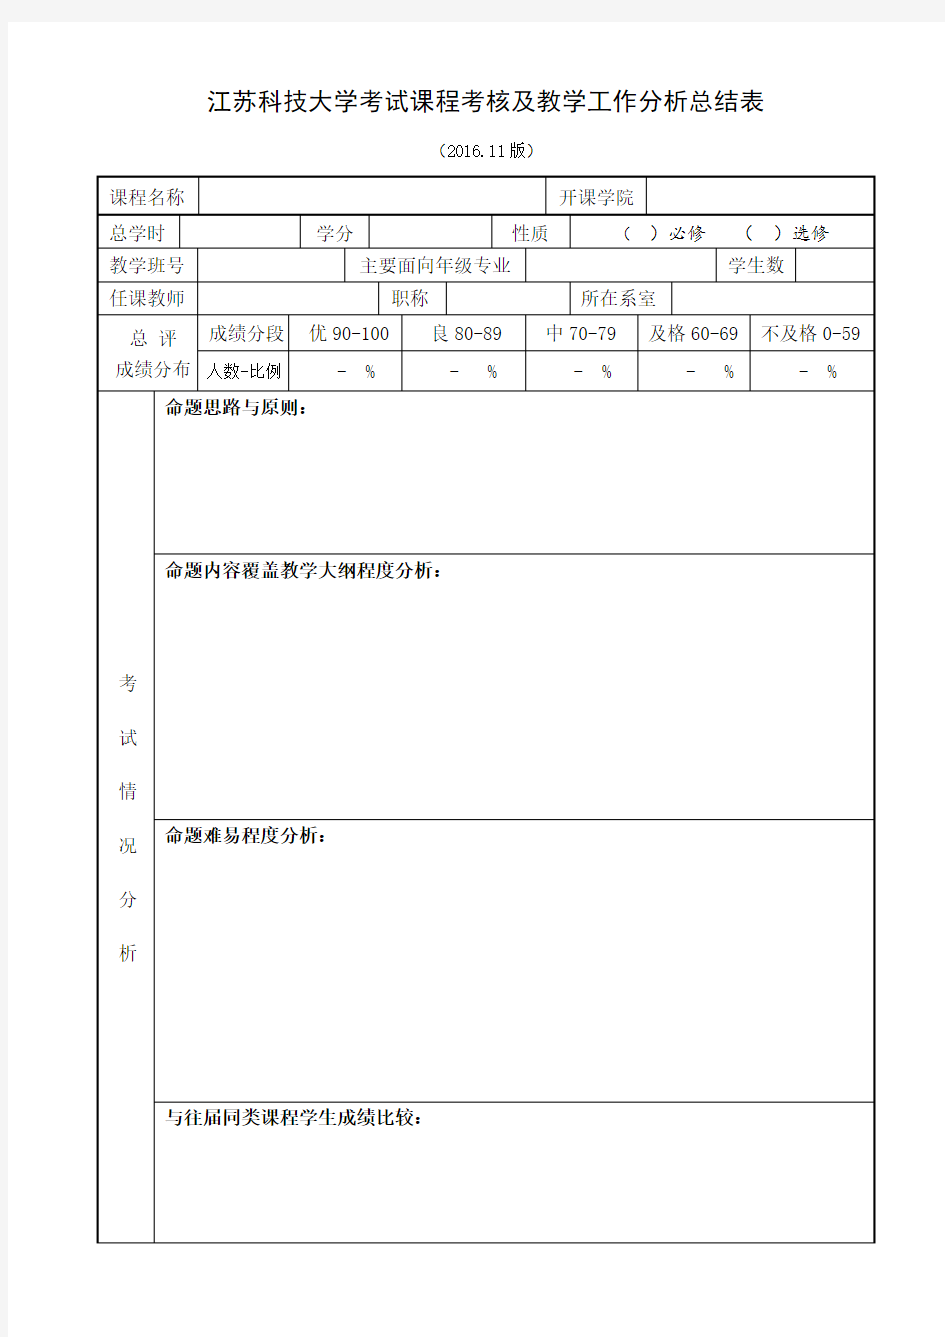 江苏科技大学考试课程考核及教学工作分析总结表